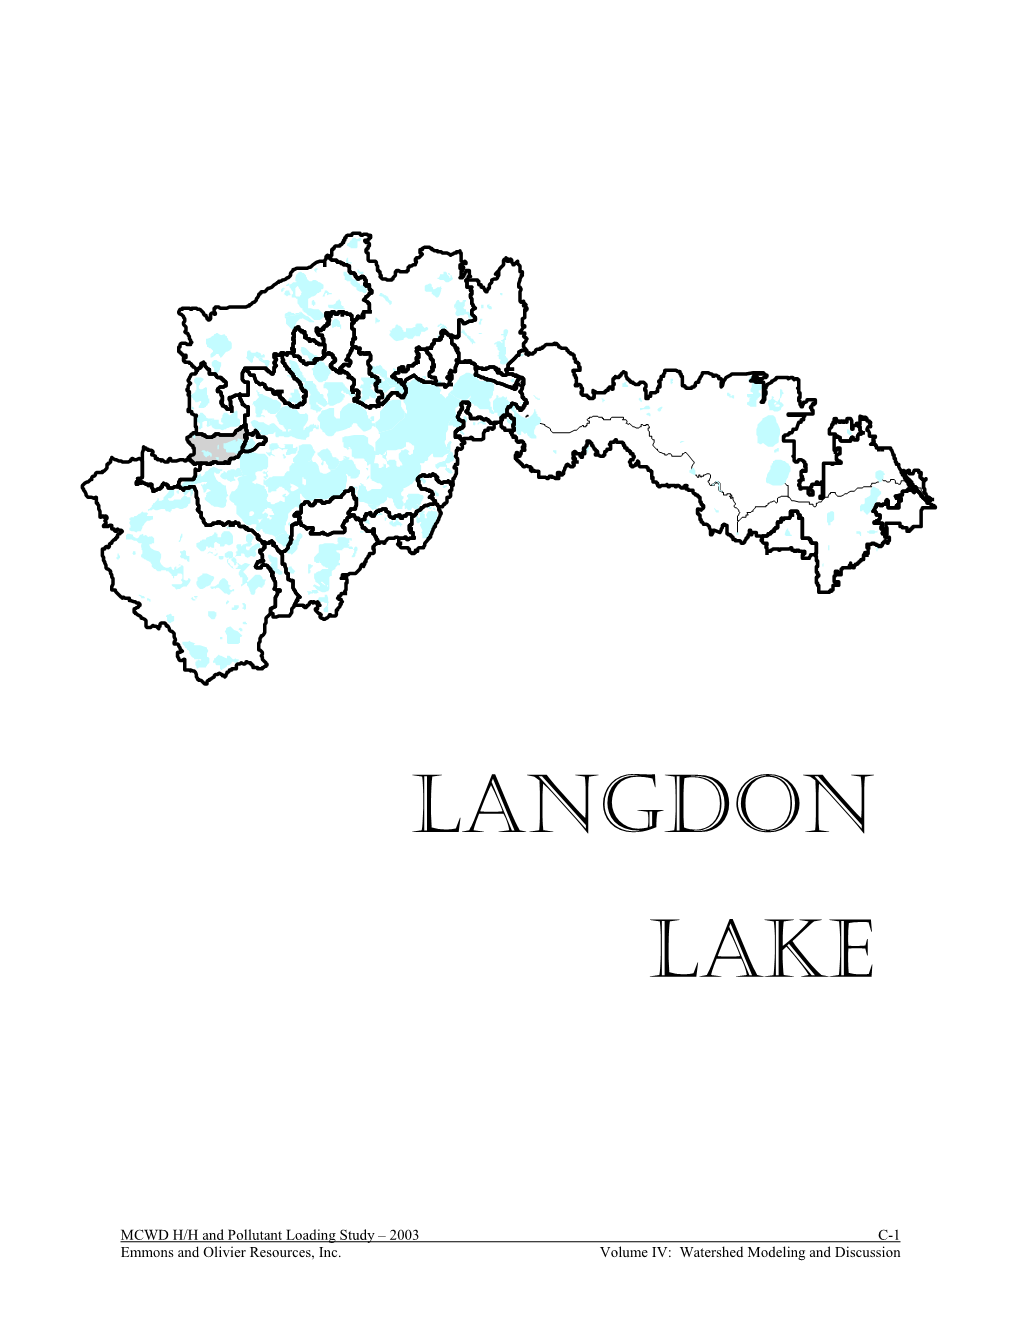 Langdon Lake